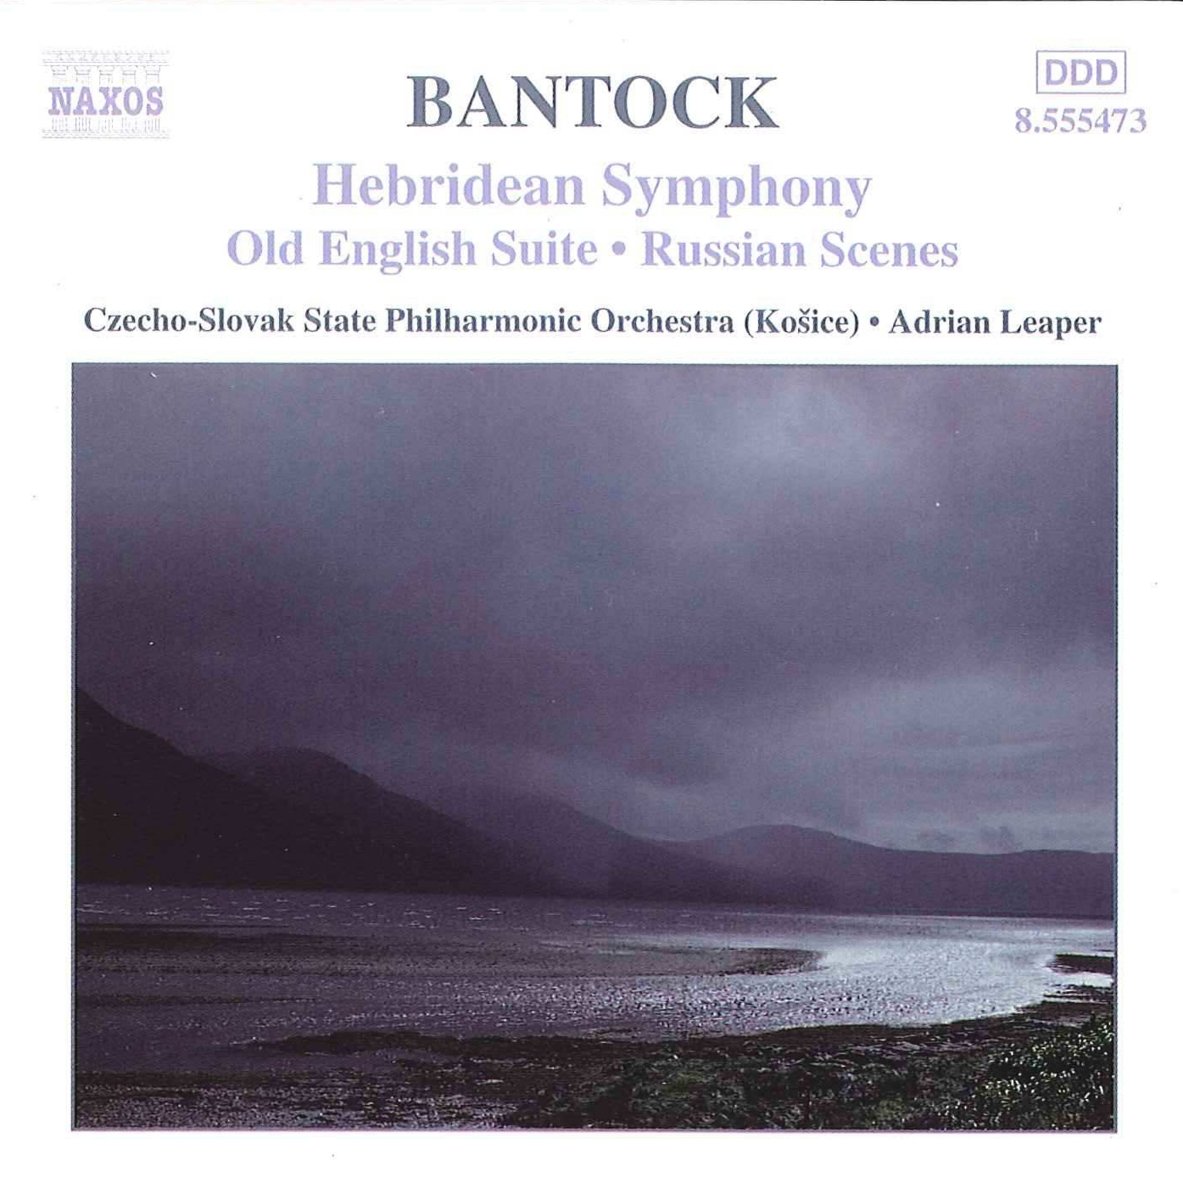 BANTOCK: Hebridean Symphony